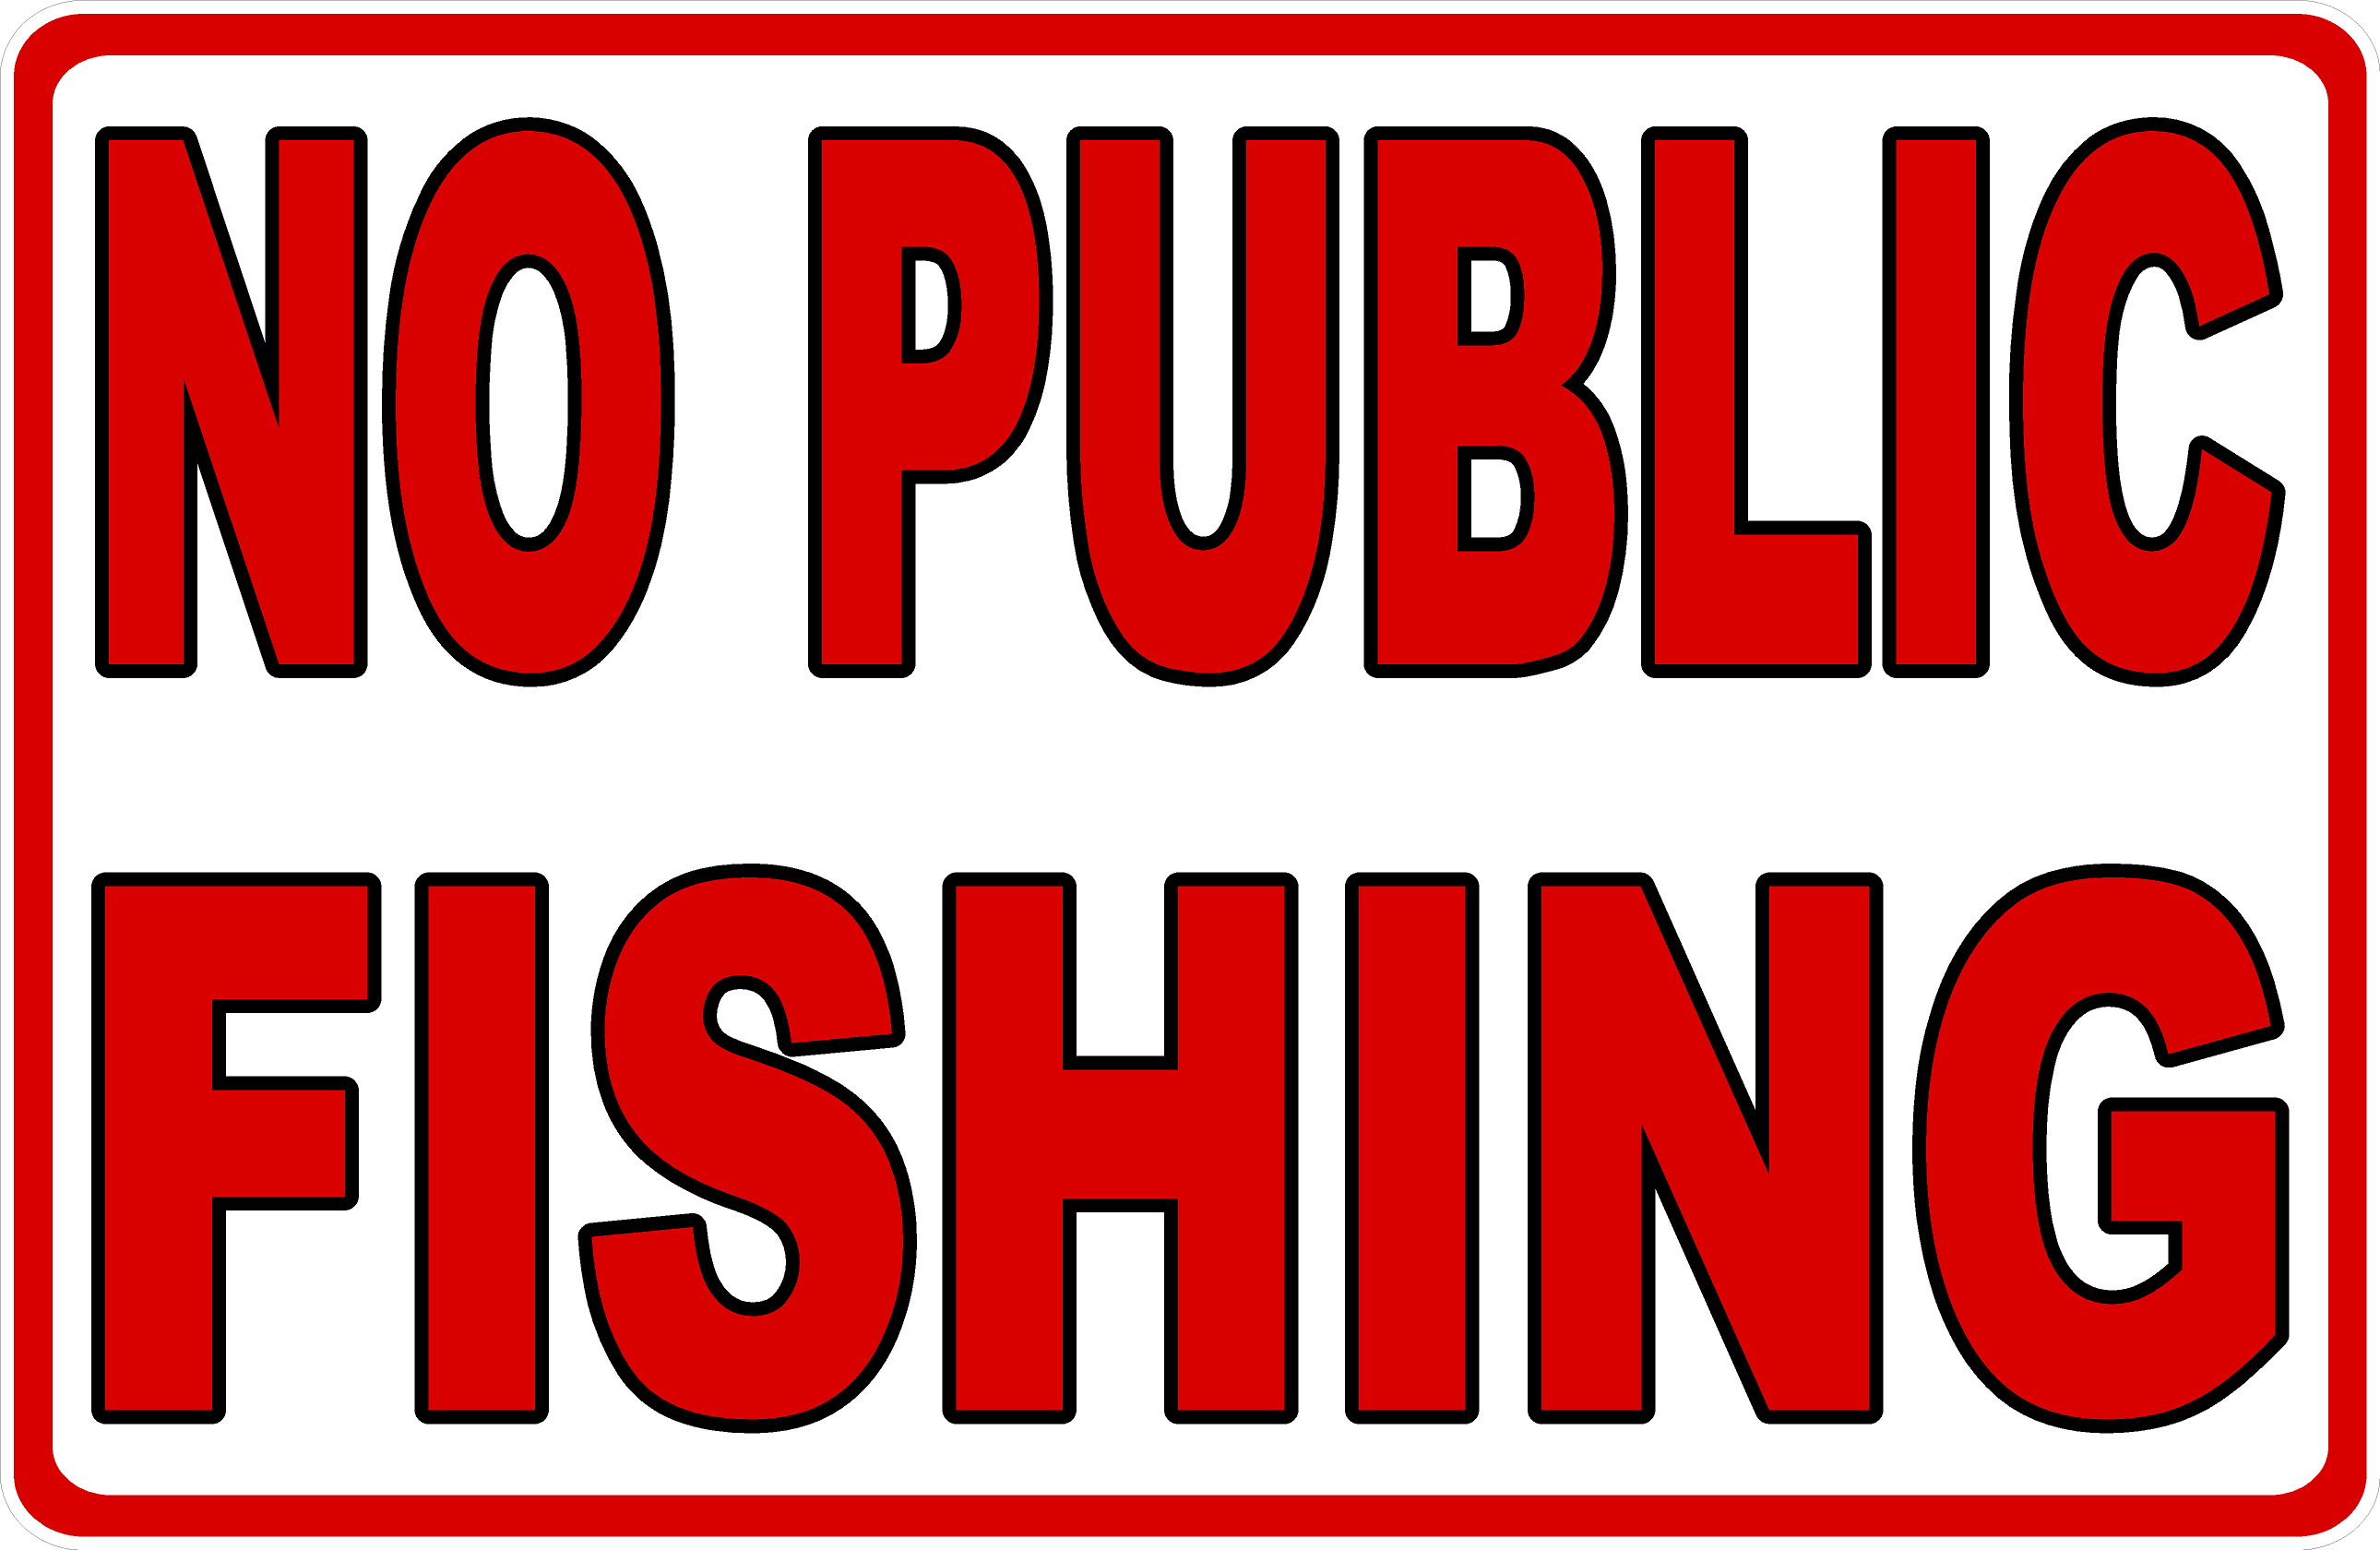 no fishing signs